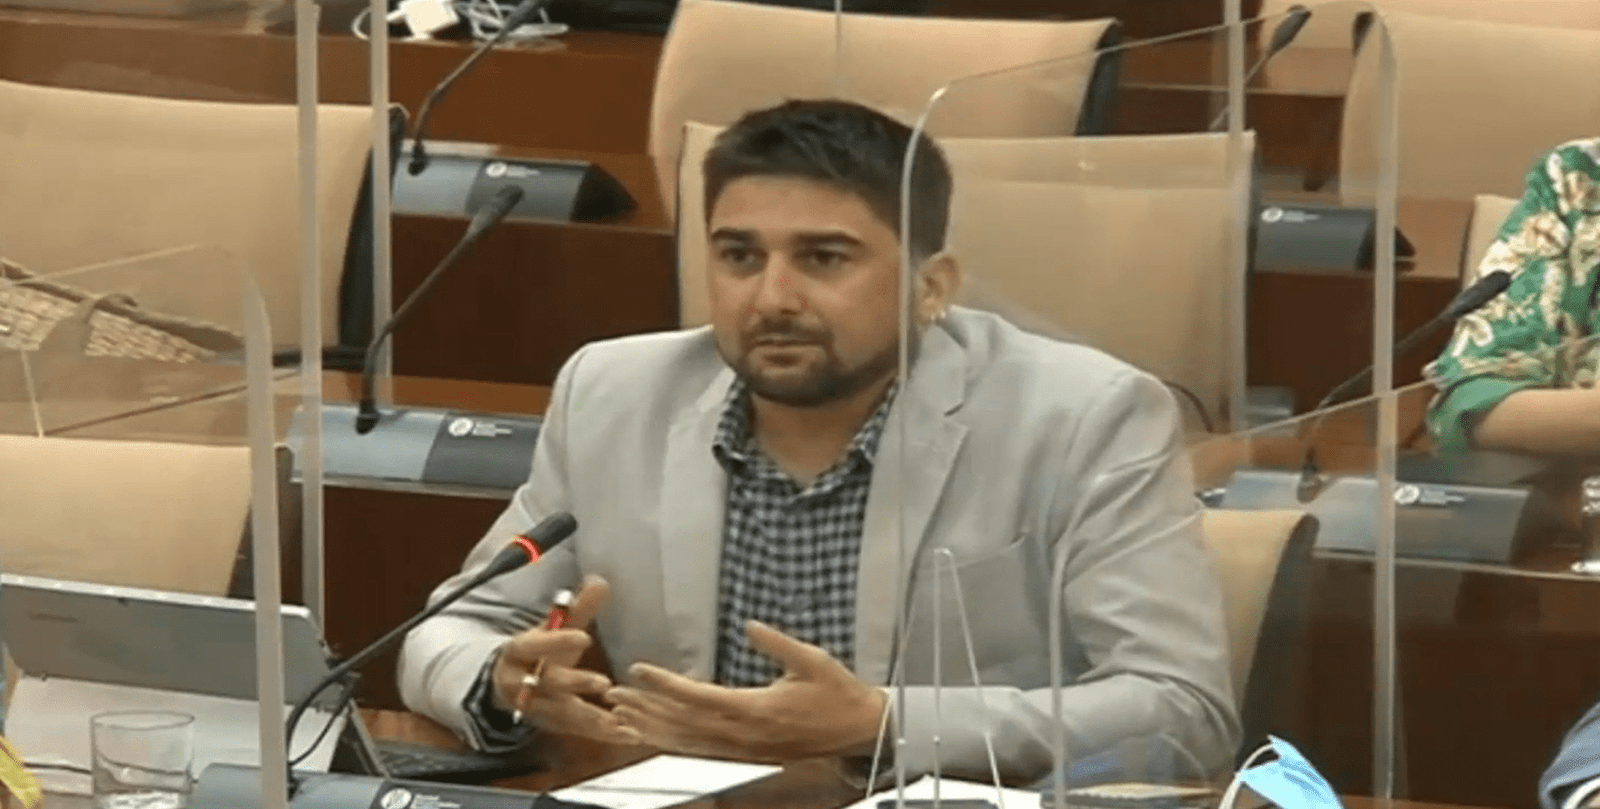 Proceso para la reincorporación del personal laboral de la Administración General de la Junta de Andalucía  tras la situación ocasionada por el Covid-19